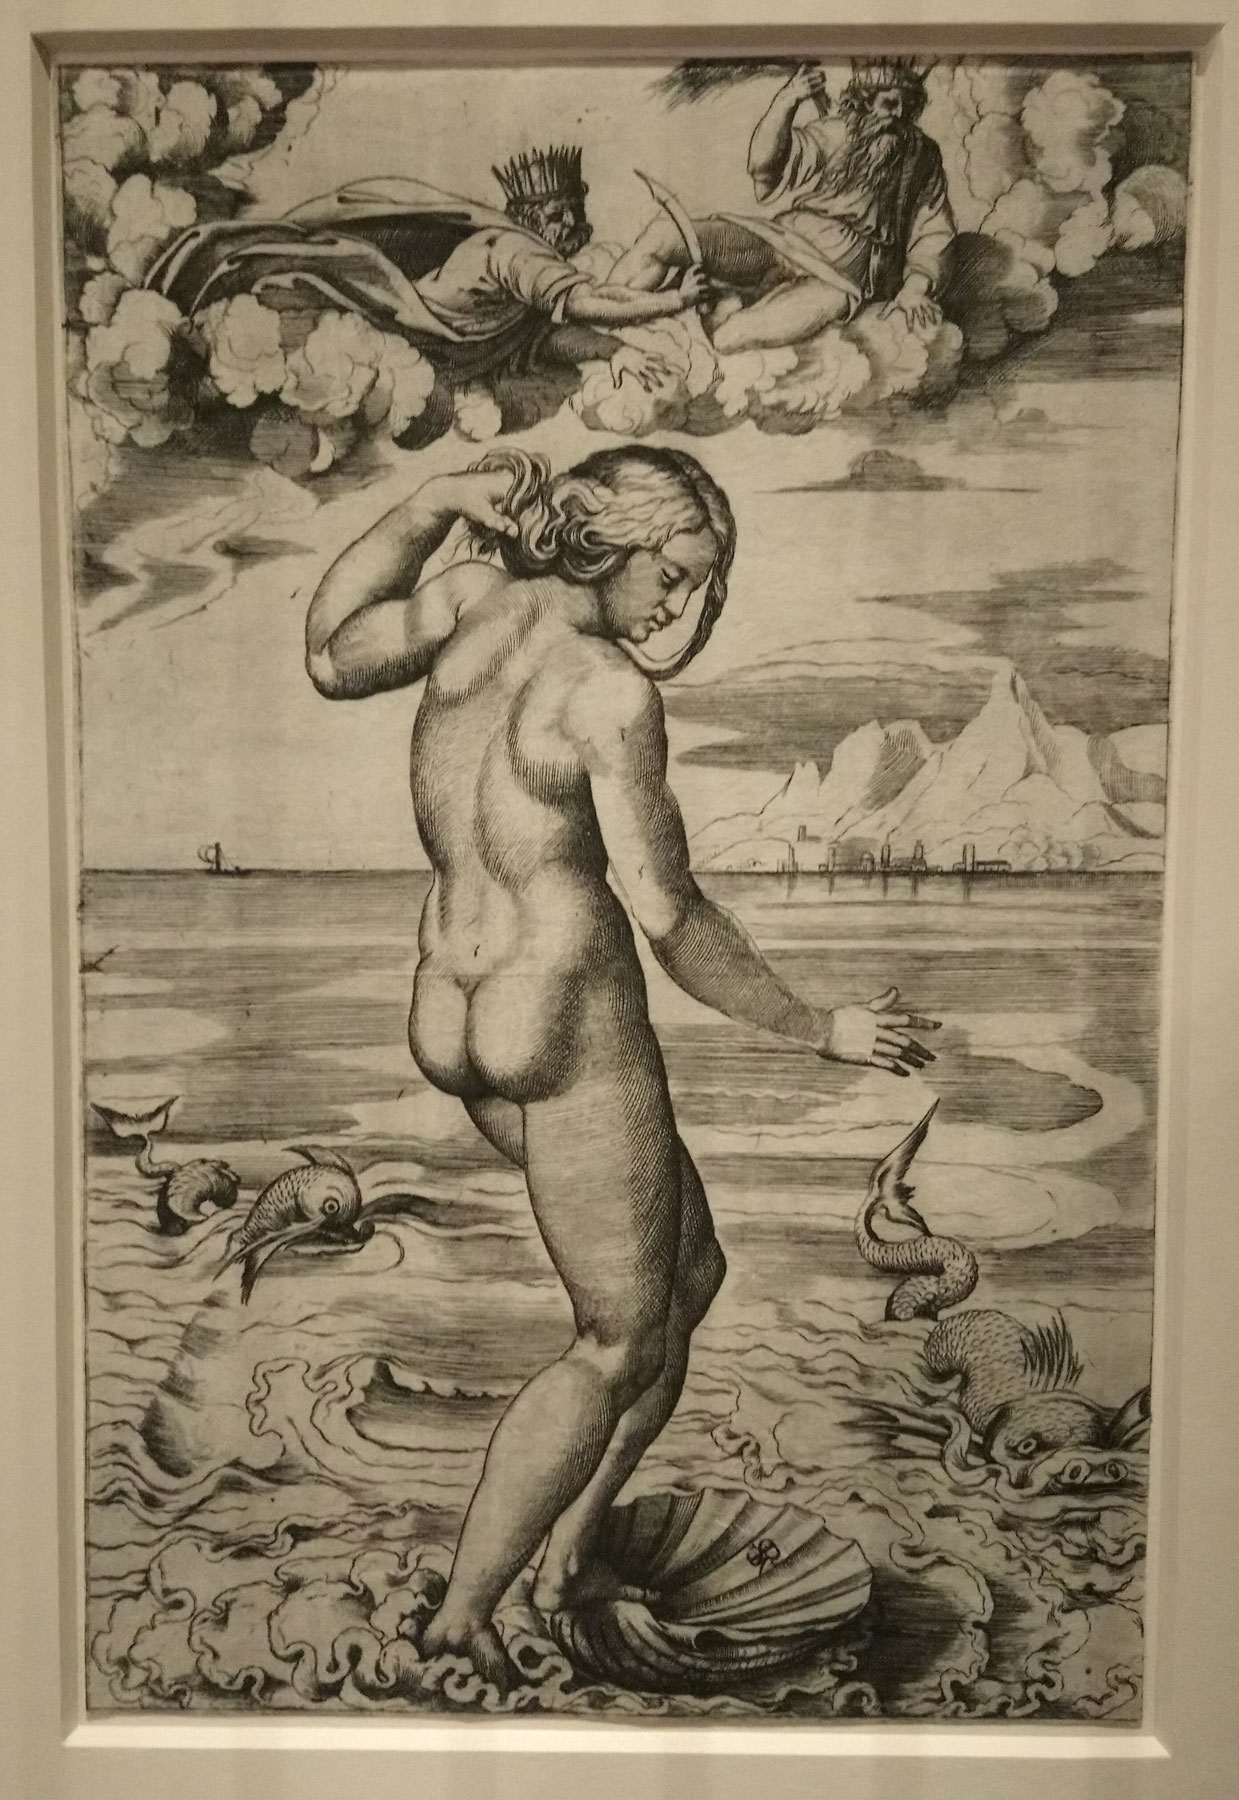 Marco Dente da Ravenna (da Raffaello), Venere Anadiomene (1516 circa; incisione a bulino, 262 x 172 mm; Vienna, Albertina)
